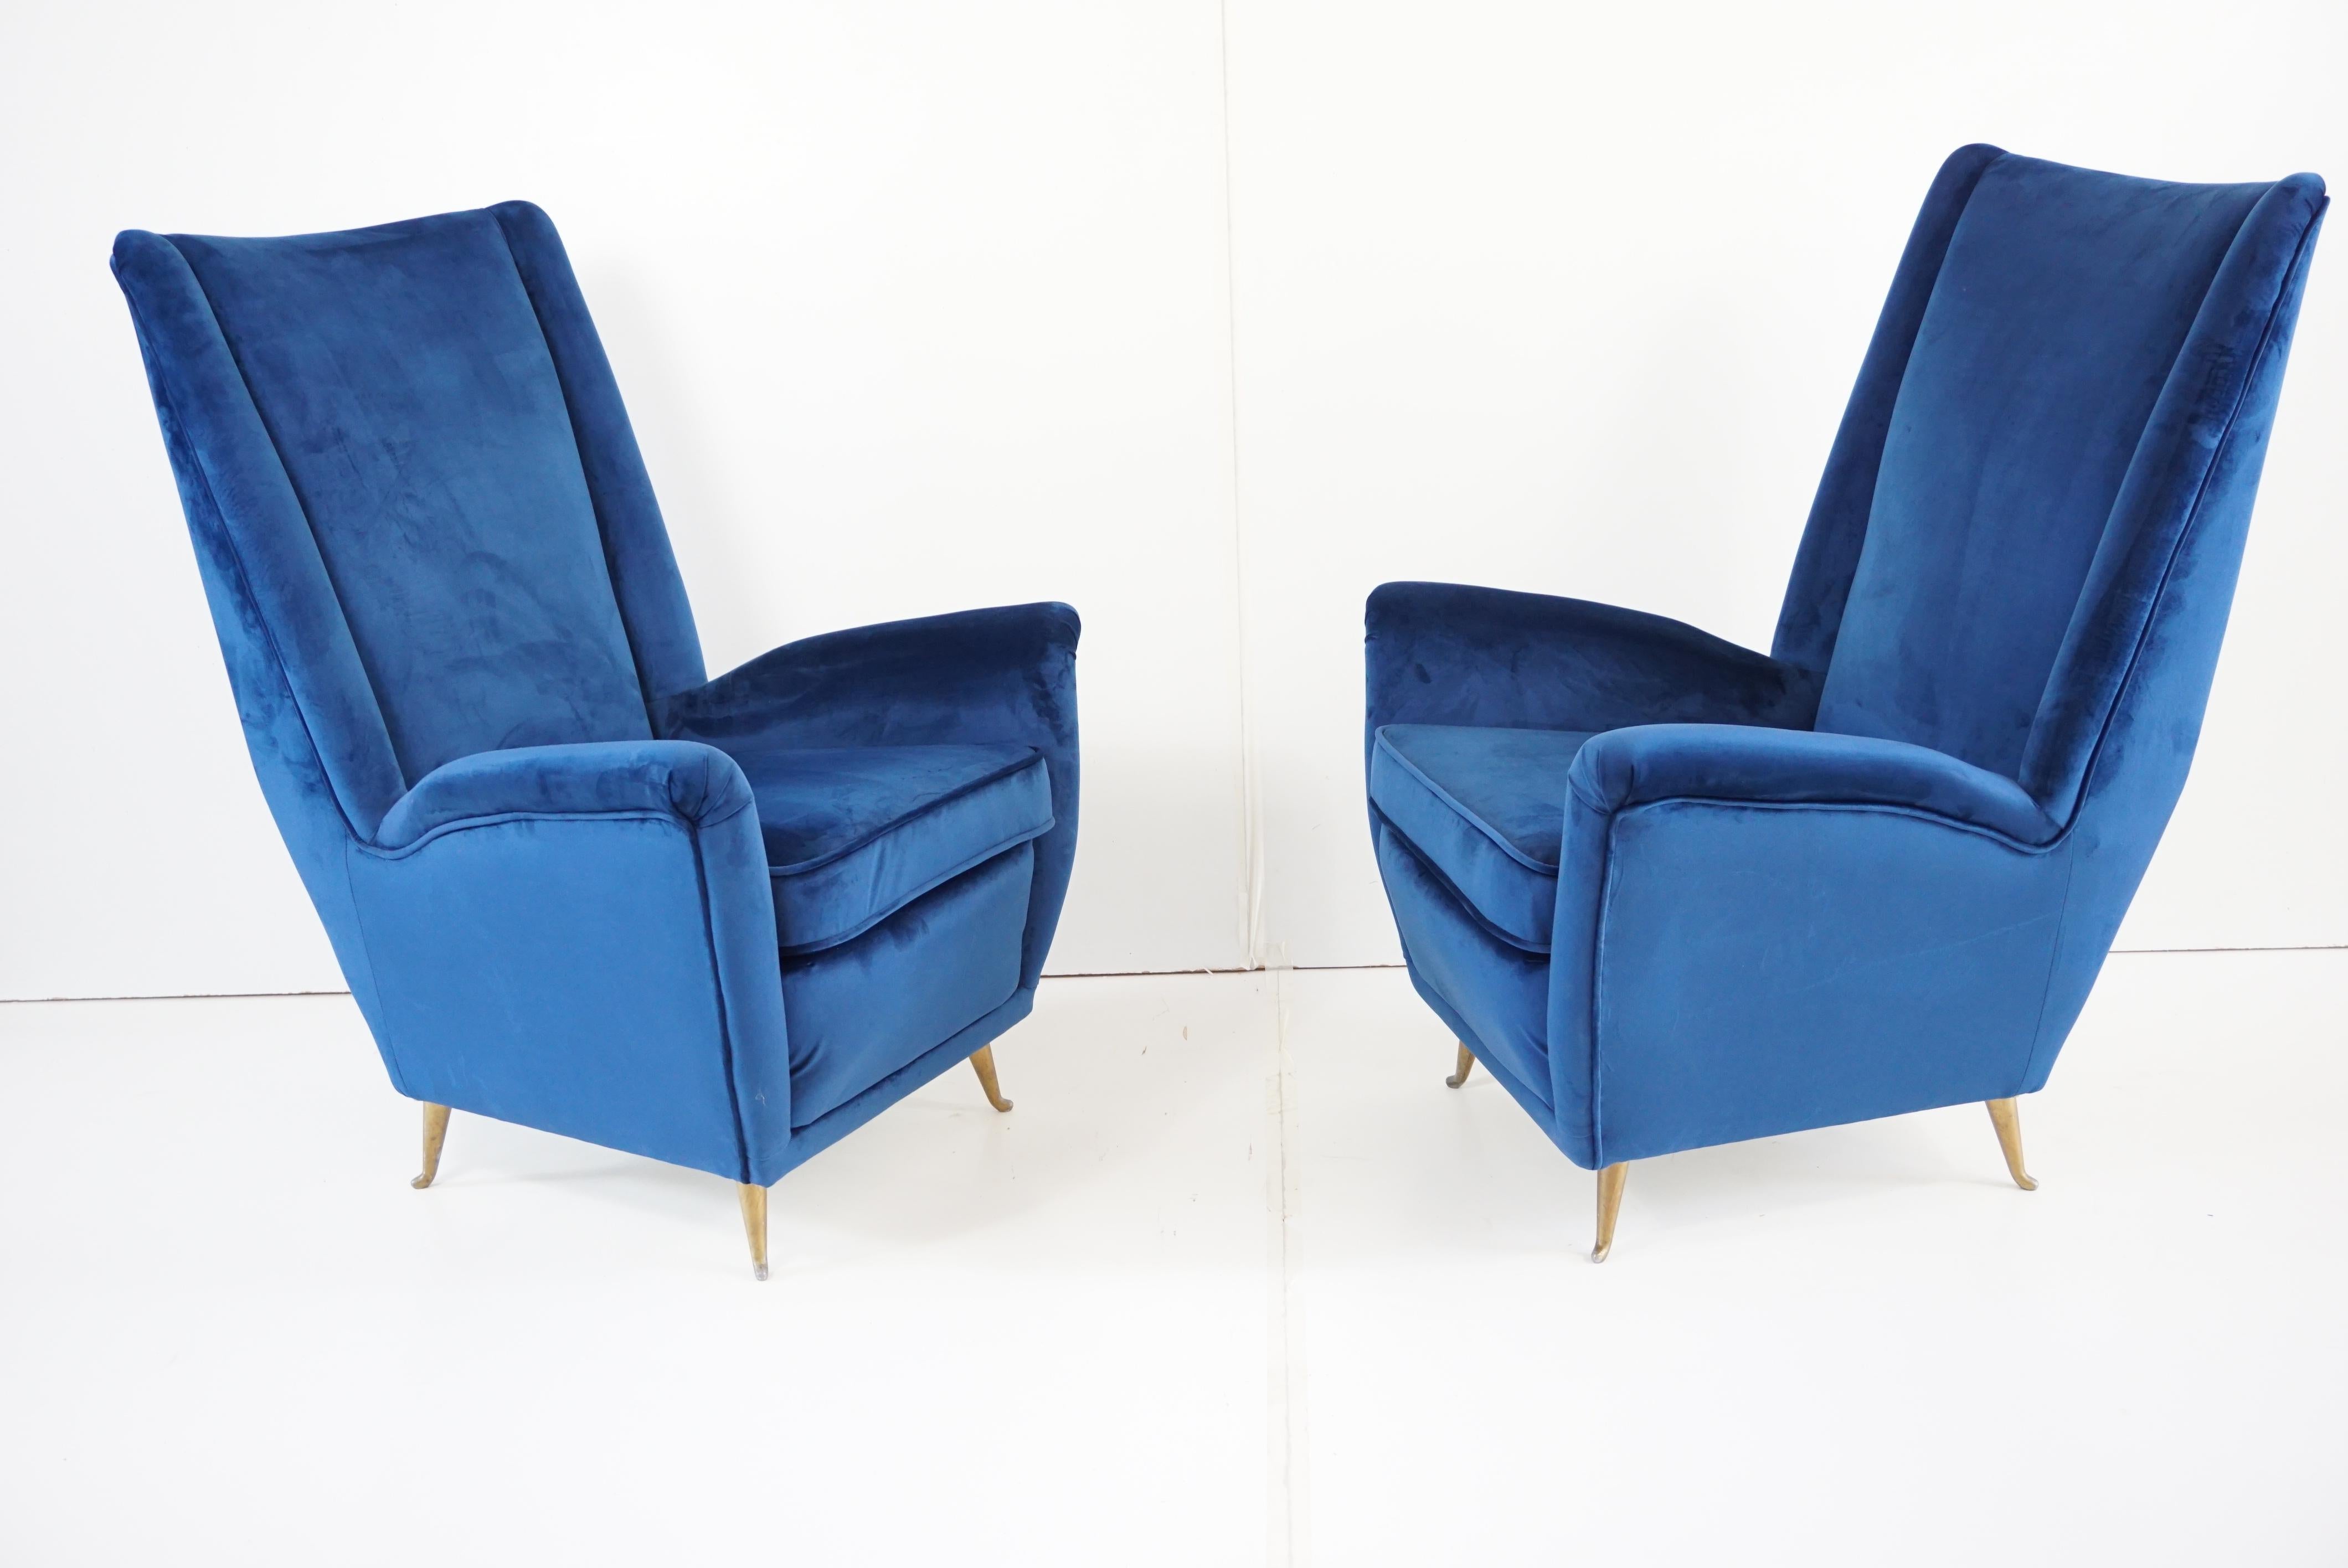 Paar blauer Samt GIO PONTI bergere Sessel, hergestellt von ISA Arredamenti Bergamo, um 1950.
Dieses von Gio Ponti in den späten 40er Jahren entworfene Modell wurde von Cassina mit der Nummer 